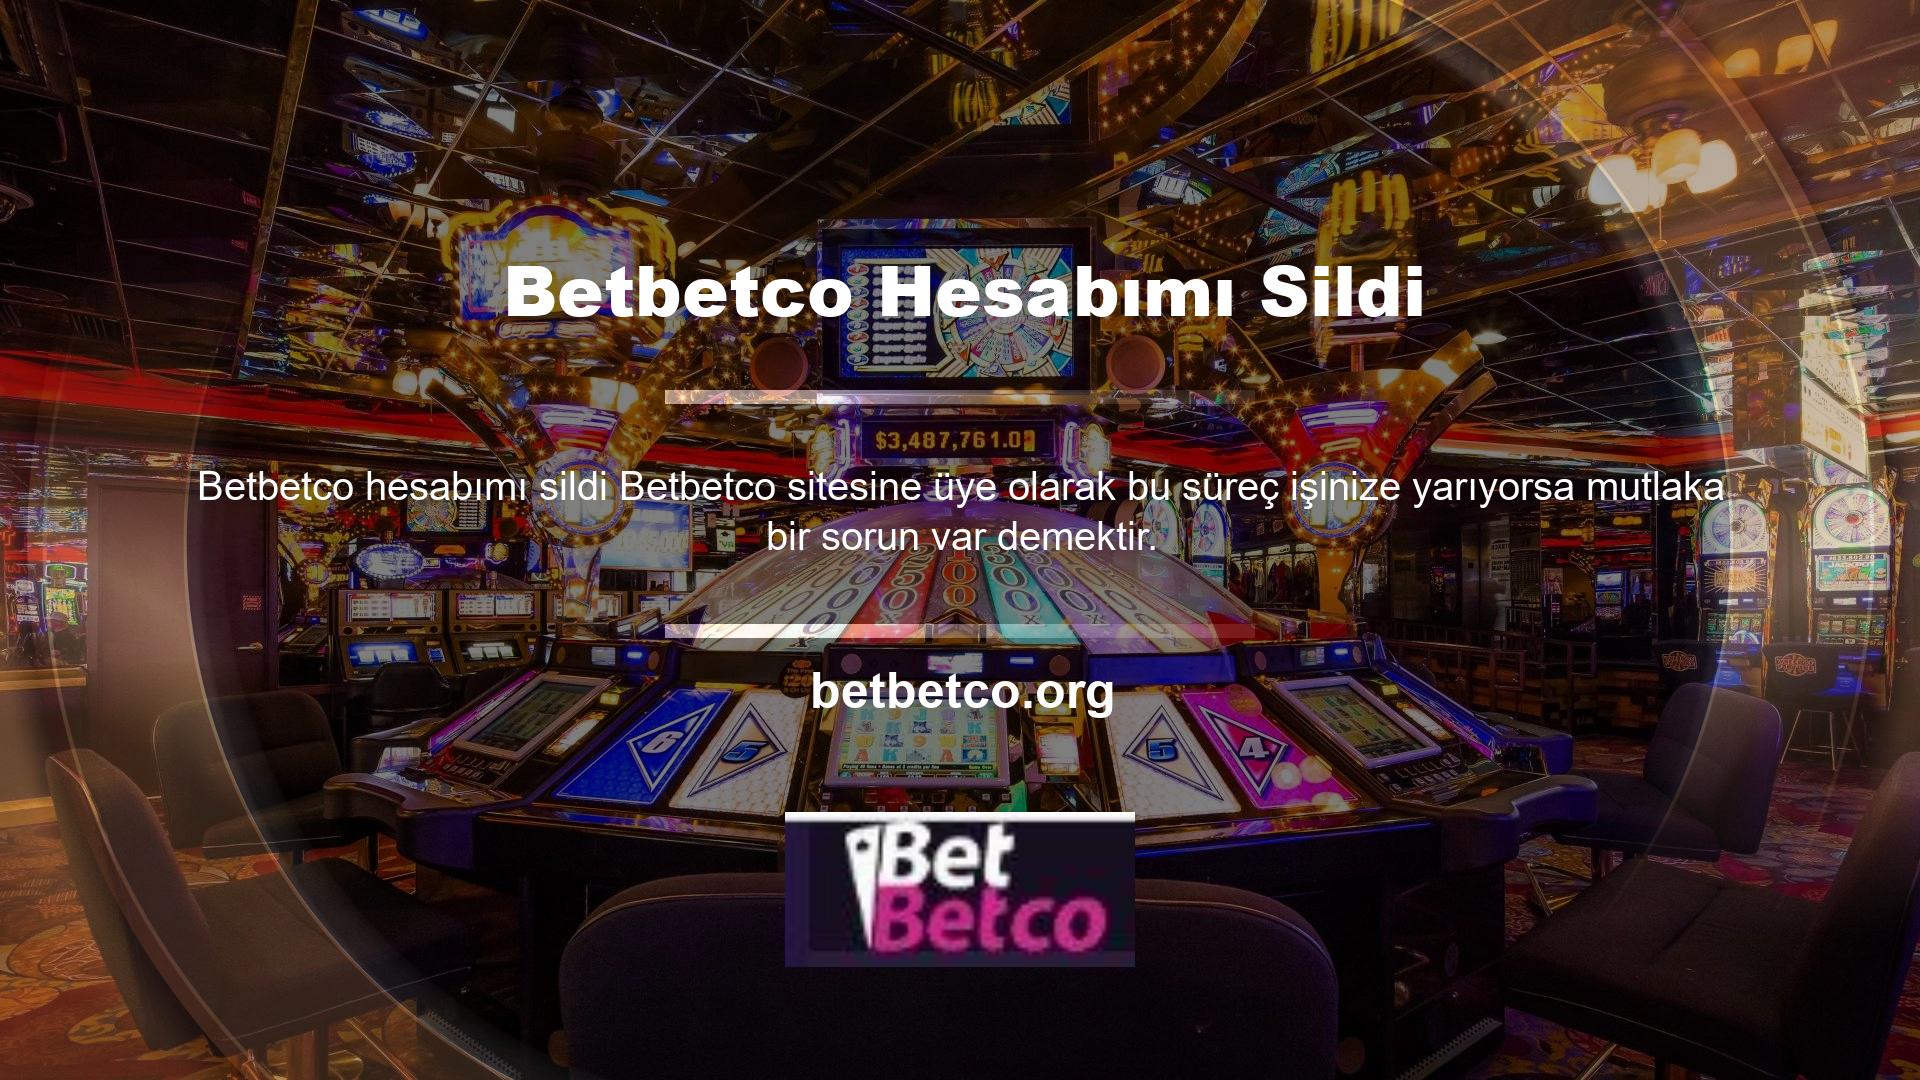 Casino sitesi casino sitesi için önlemler almış ancak kullanıcılara herhangi bir zarar vermemiştir